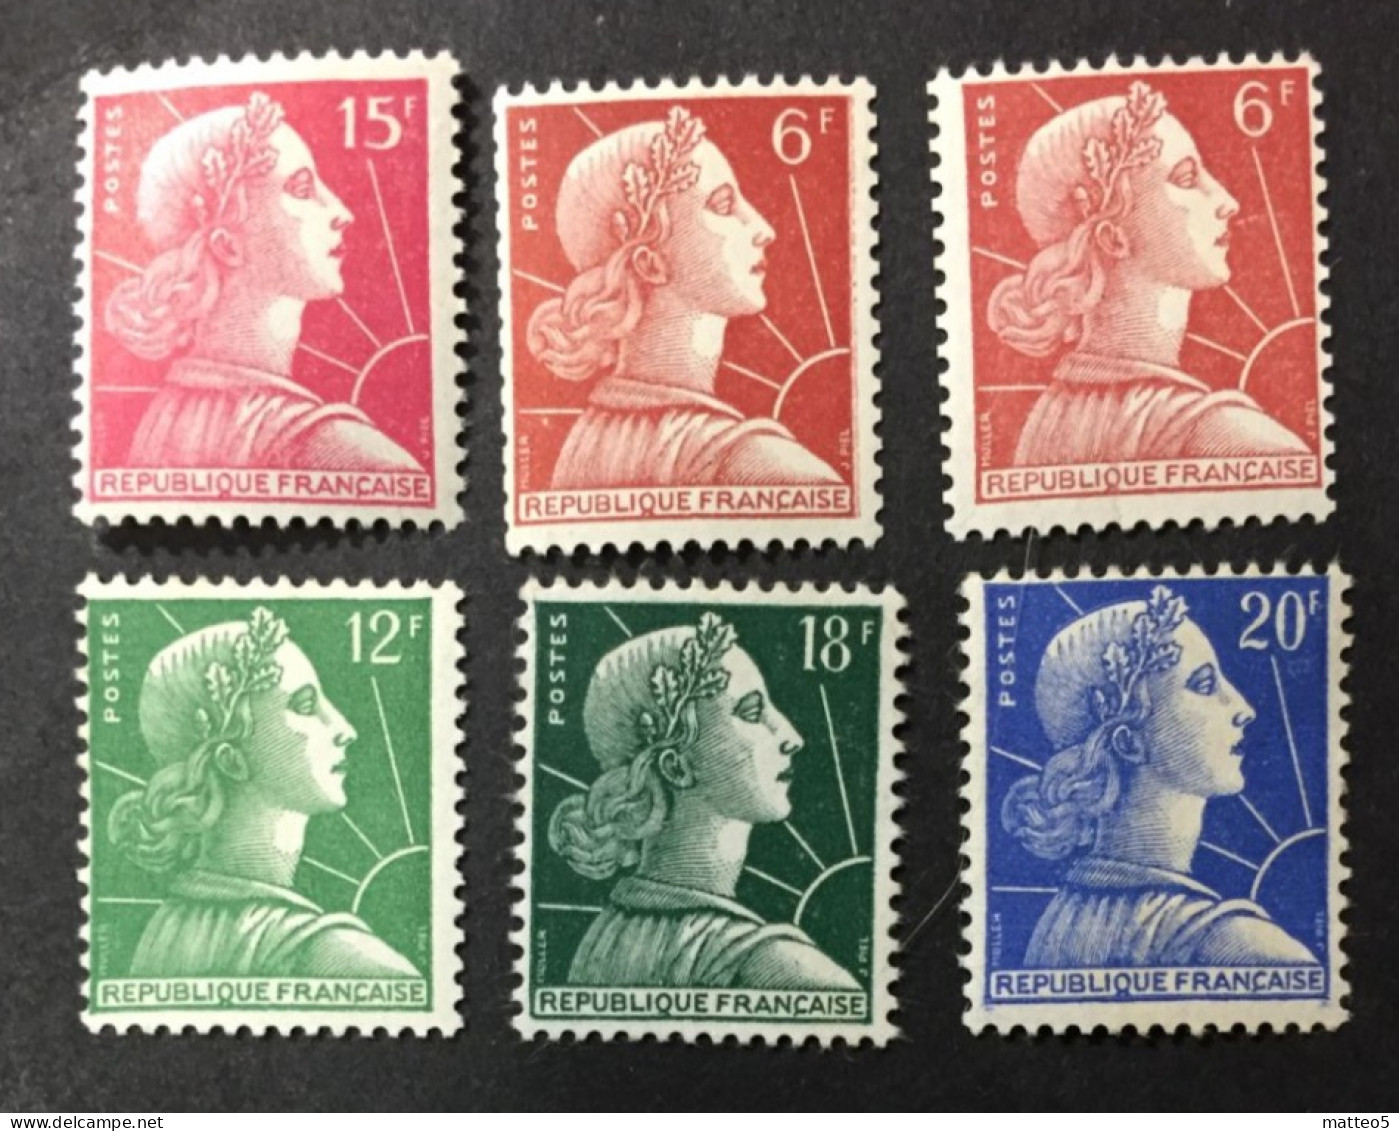 1955 /59  France - Liberty - Marianne De Muller - 6  Stamps Unused - 1955-1961 Maríanne De Muller